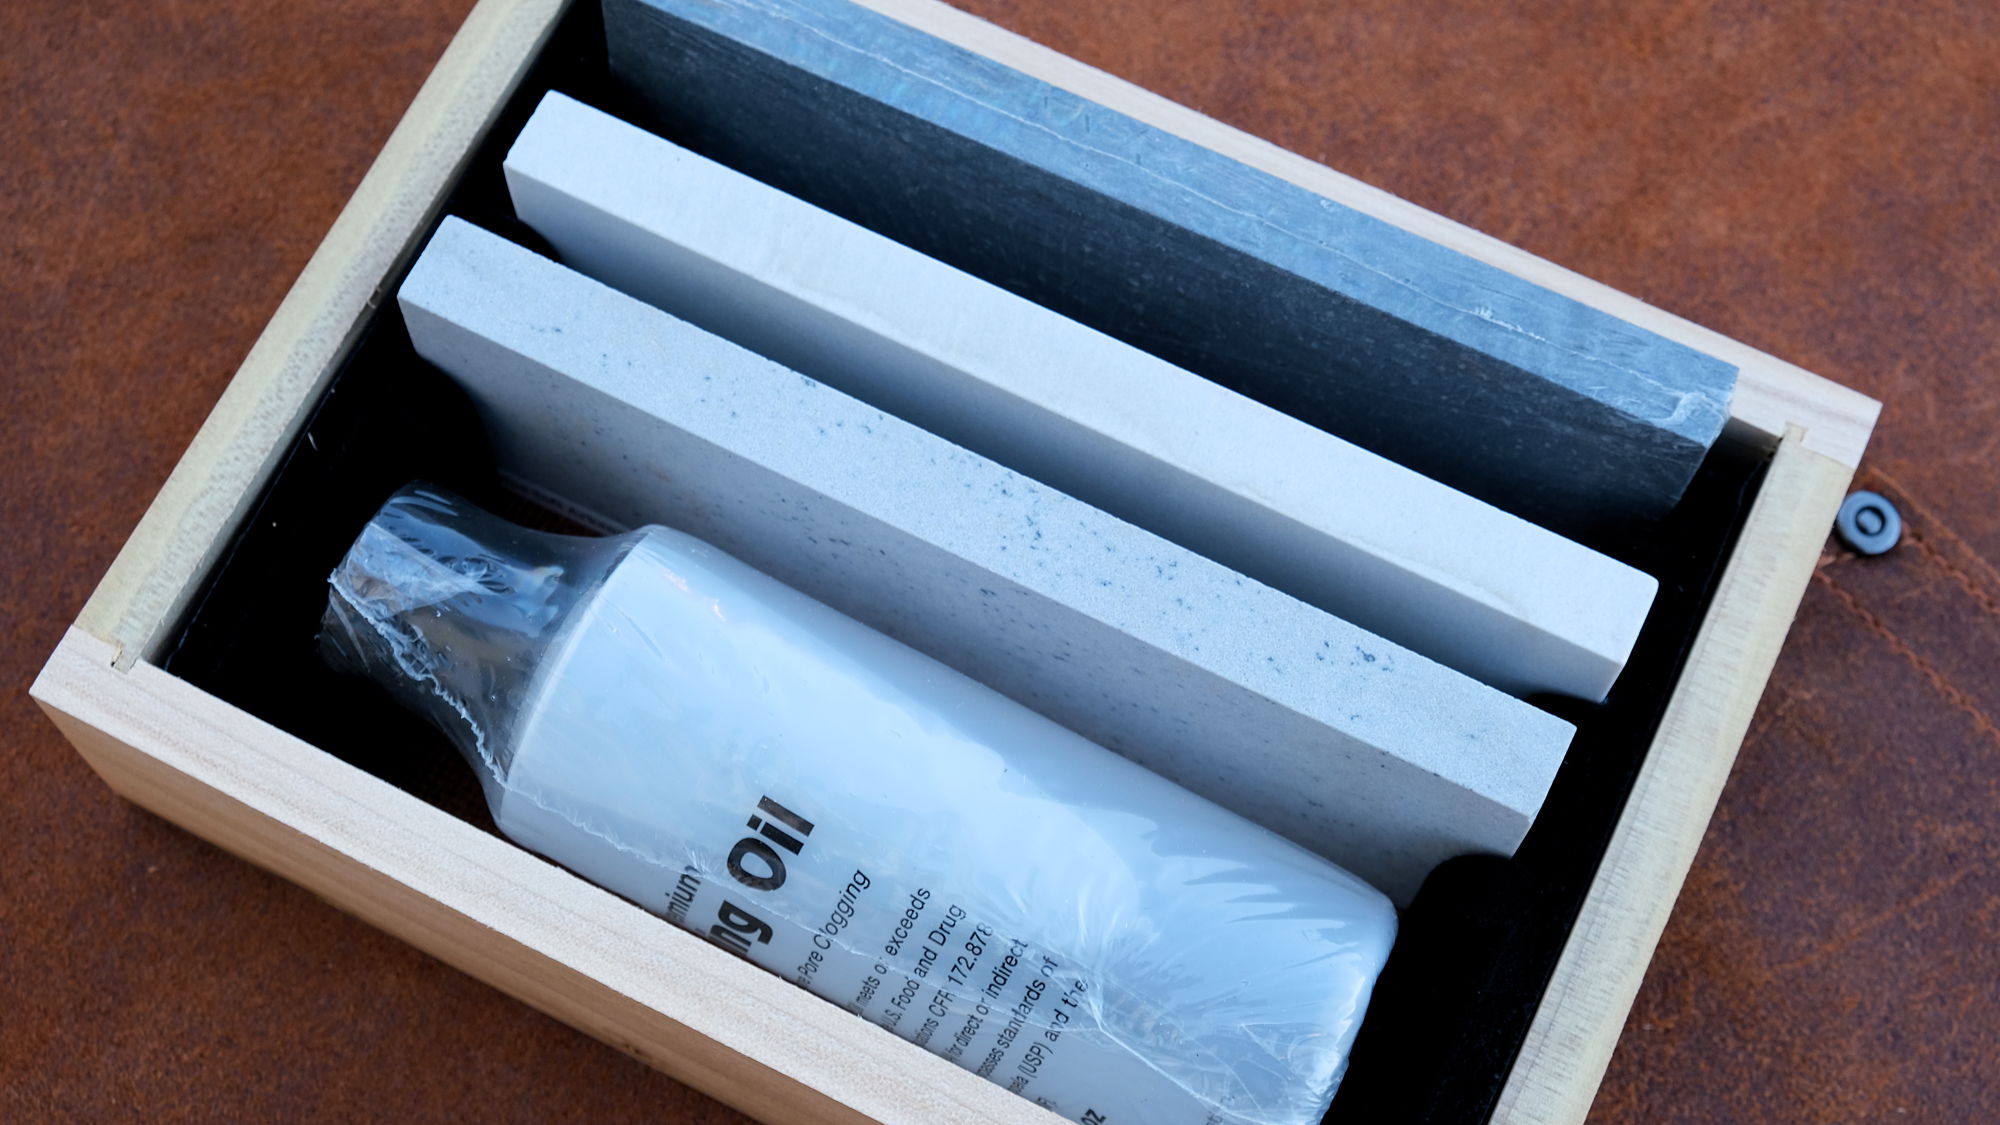 Original laguiole - Deluxe Honing Kit, Schleifstein mit Öl zu verwenden, Made in USA